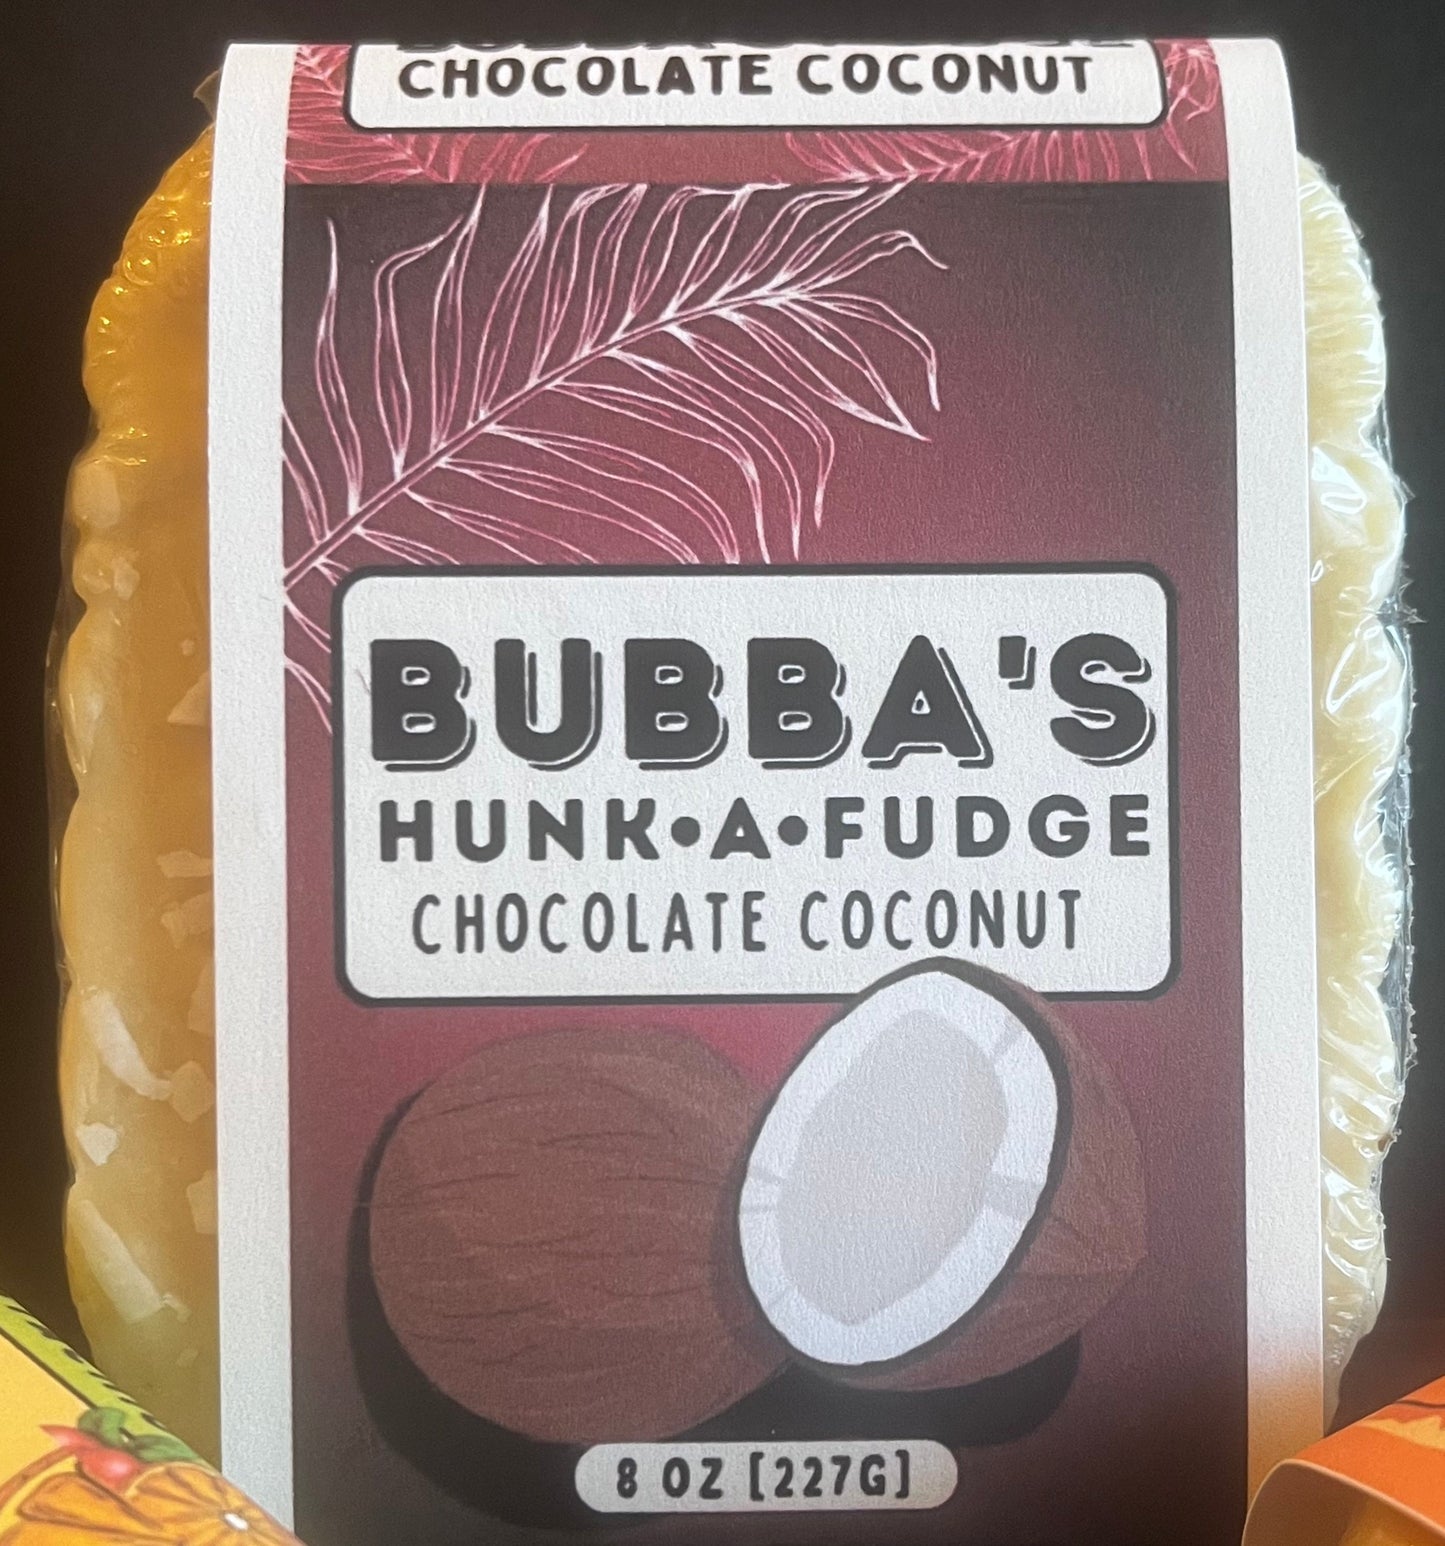 Chocolate Coconut Fudge